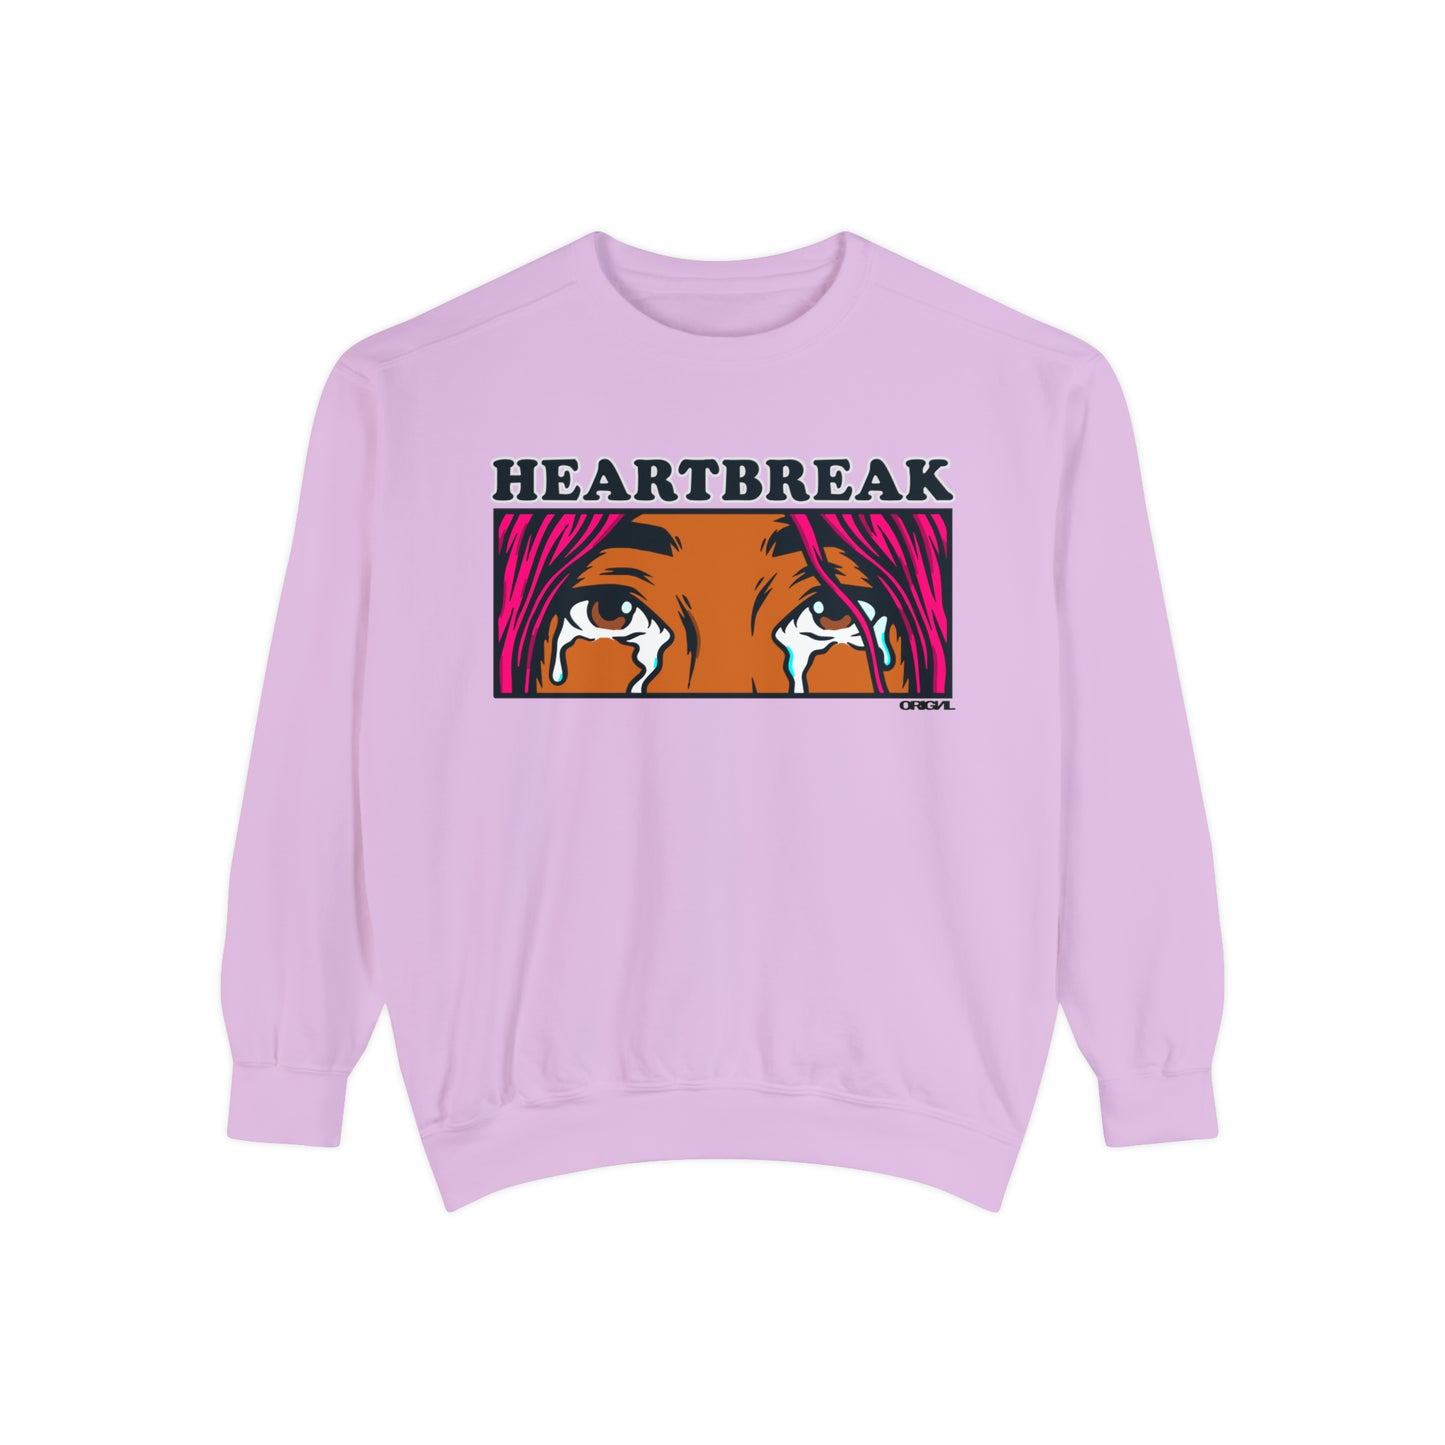 Heart/break